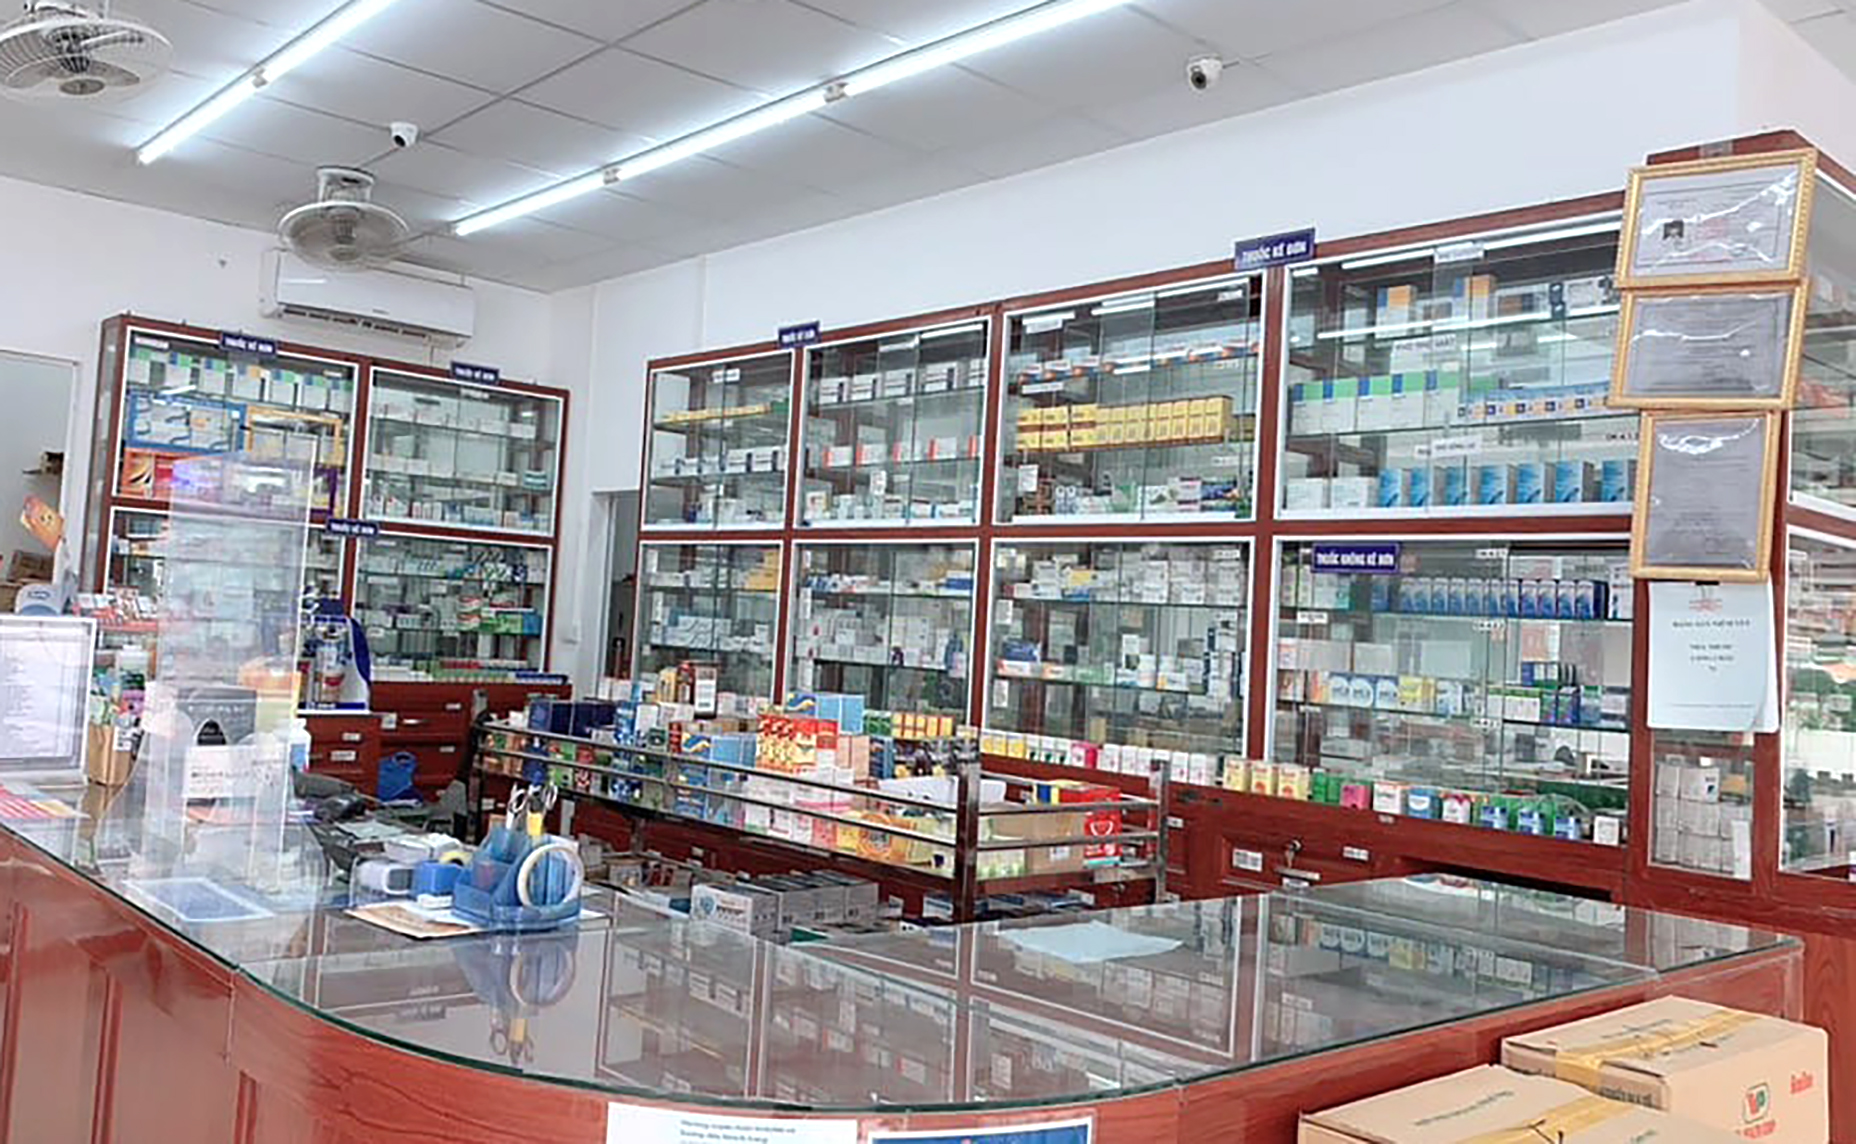 Hàng loạt nhà thuốc ở Nghệ An bị thu hồi giấy phép do bán thuốc ho nhưng không yêu cầu khách khai báo y tế